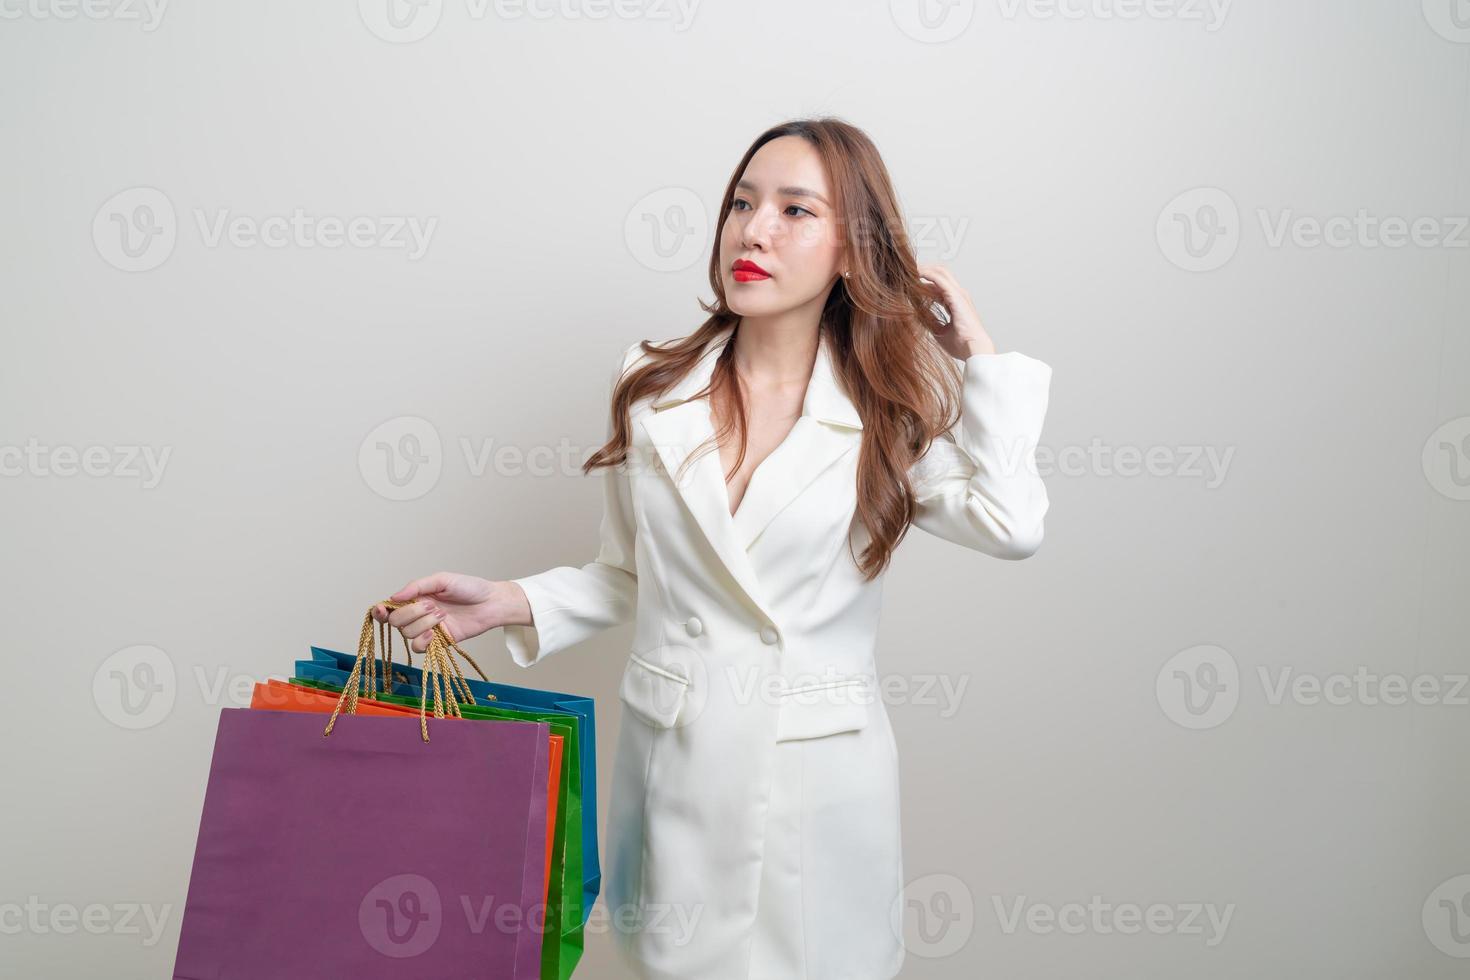 Porträt schöne asiatische Frau mit Einkaufstasche foto